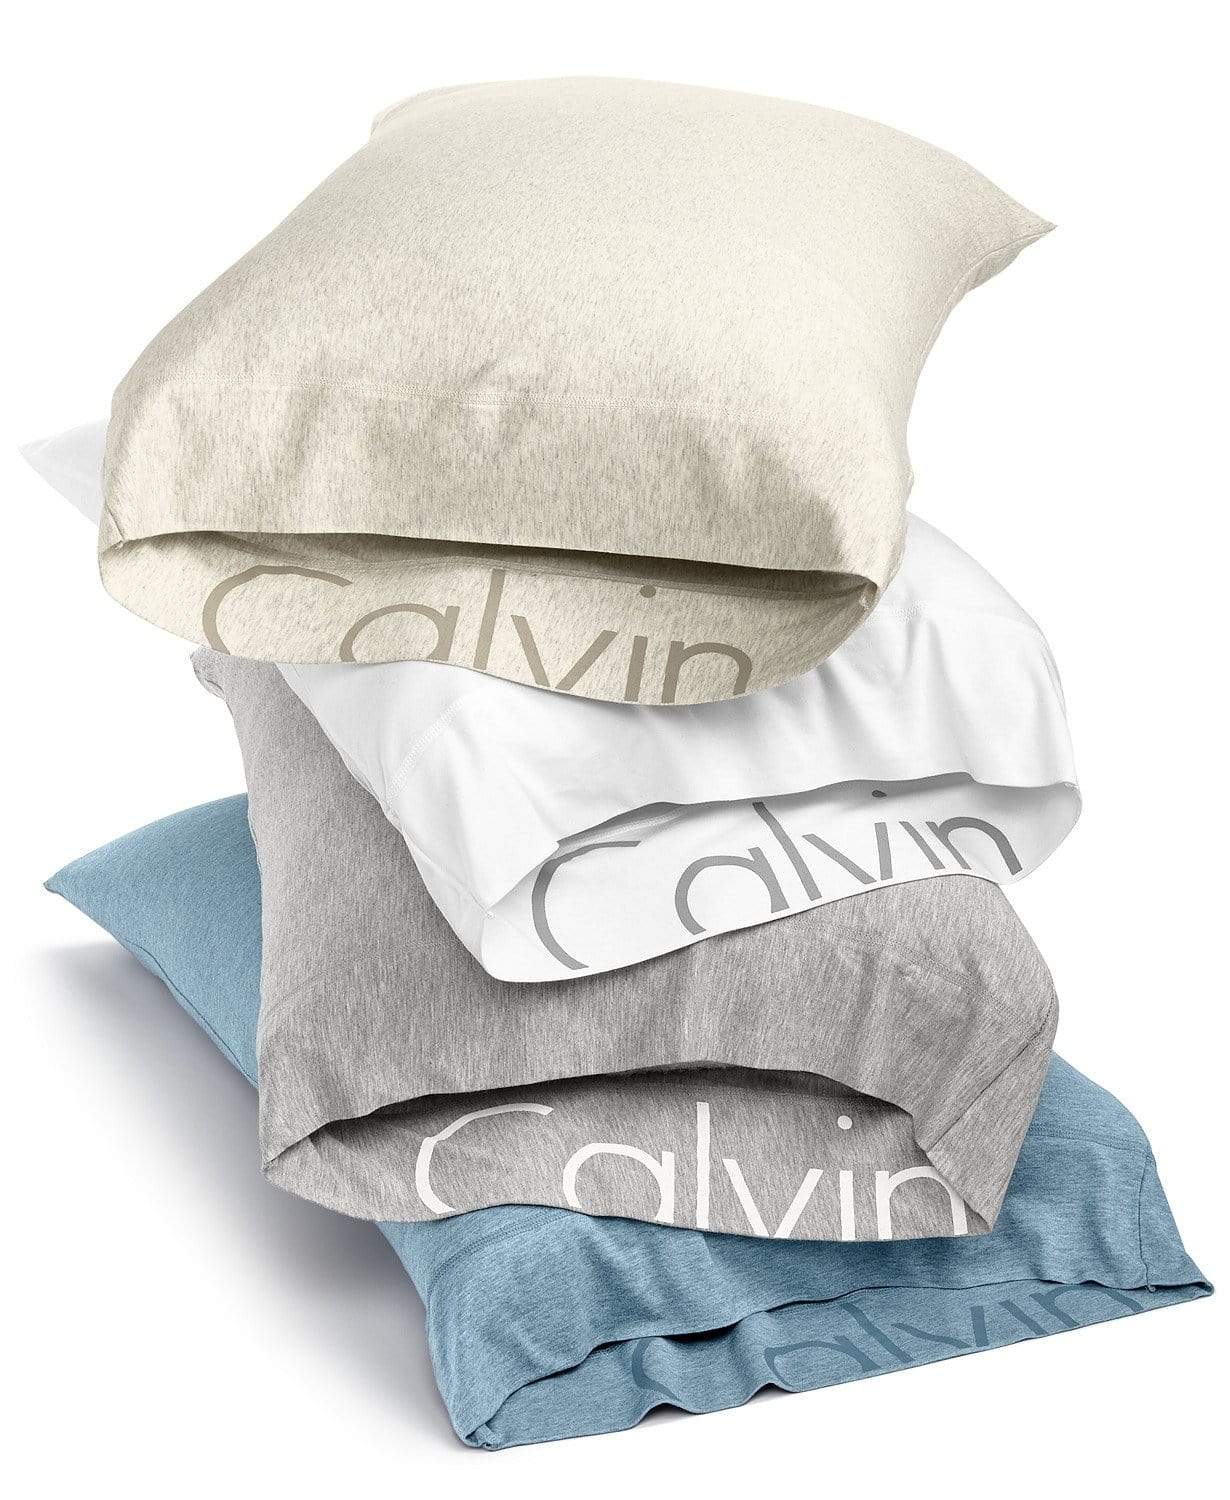 CALVIN KLEIN Bedsheets & Pillowcases Queen Queen Pillowcases-Set of 2